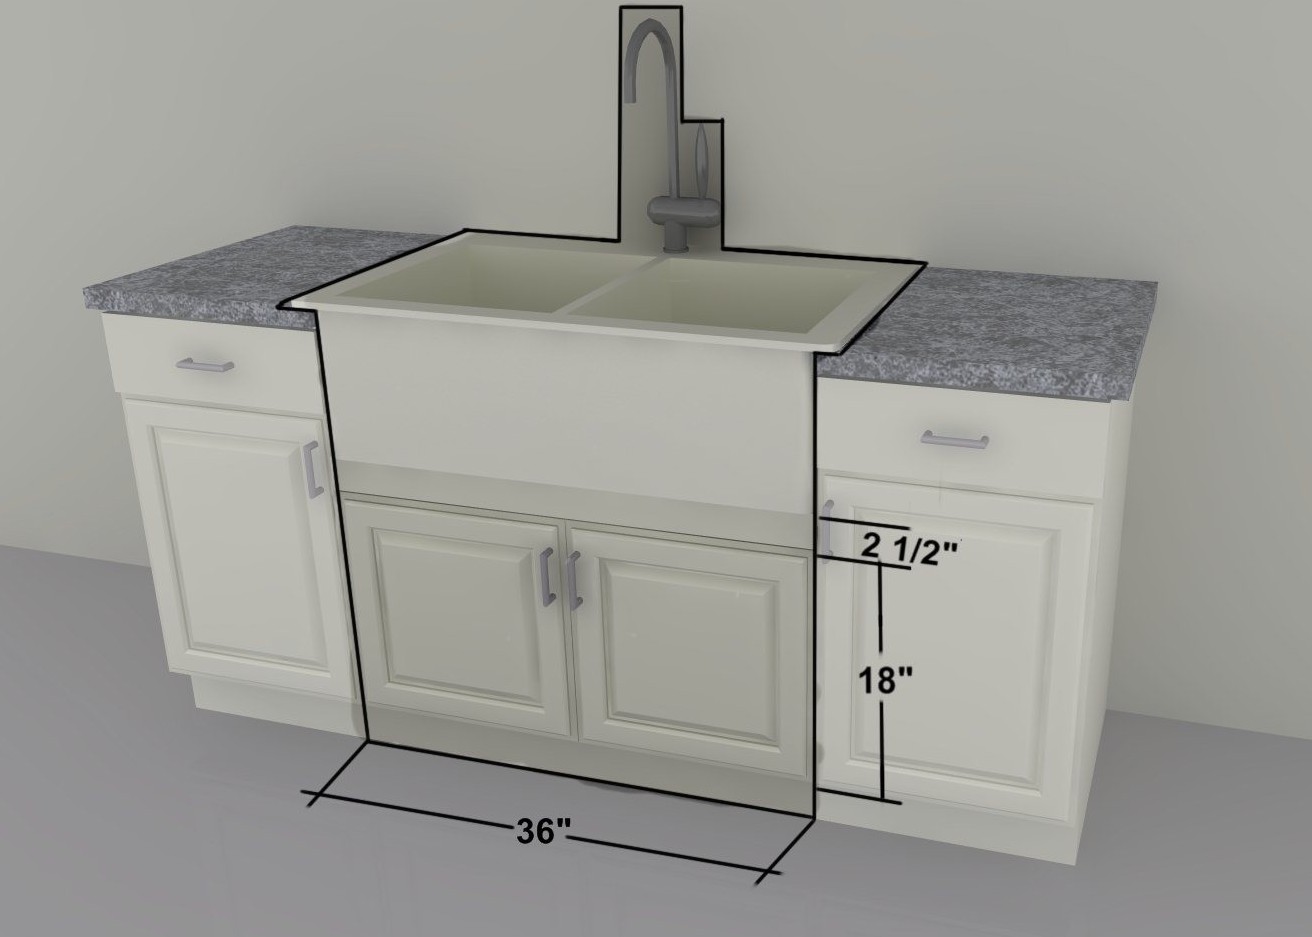 standard kitchen sink cabinet